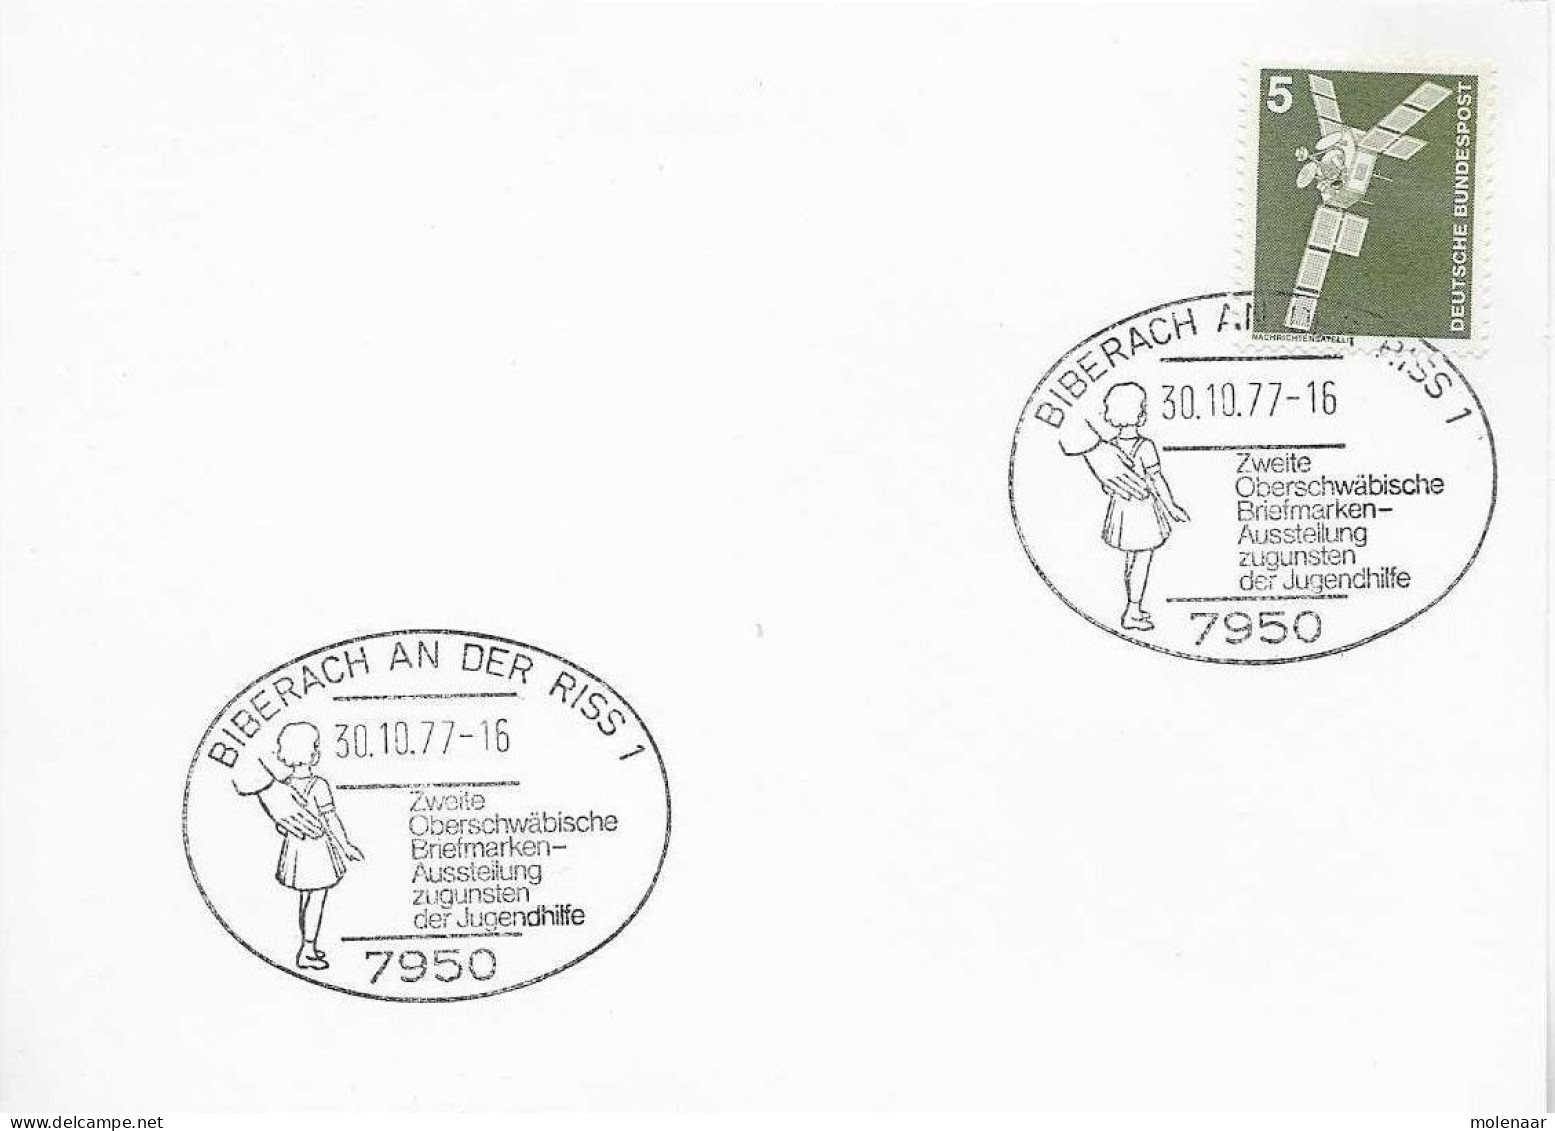 Postzegels > Europa > Duitsland > Berlijn > 1970-1979 > Kaart Met No. 494 (17150) - Lettres & Documents